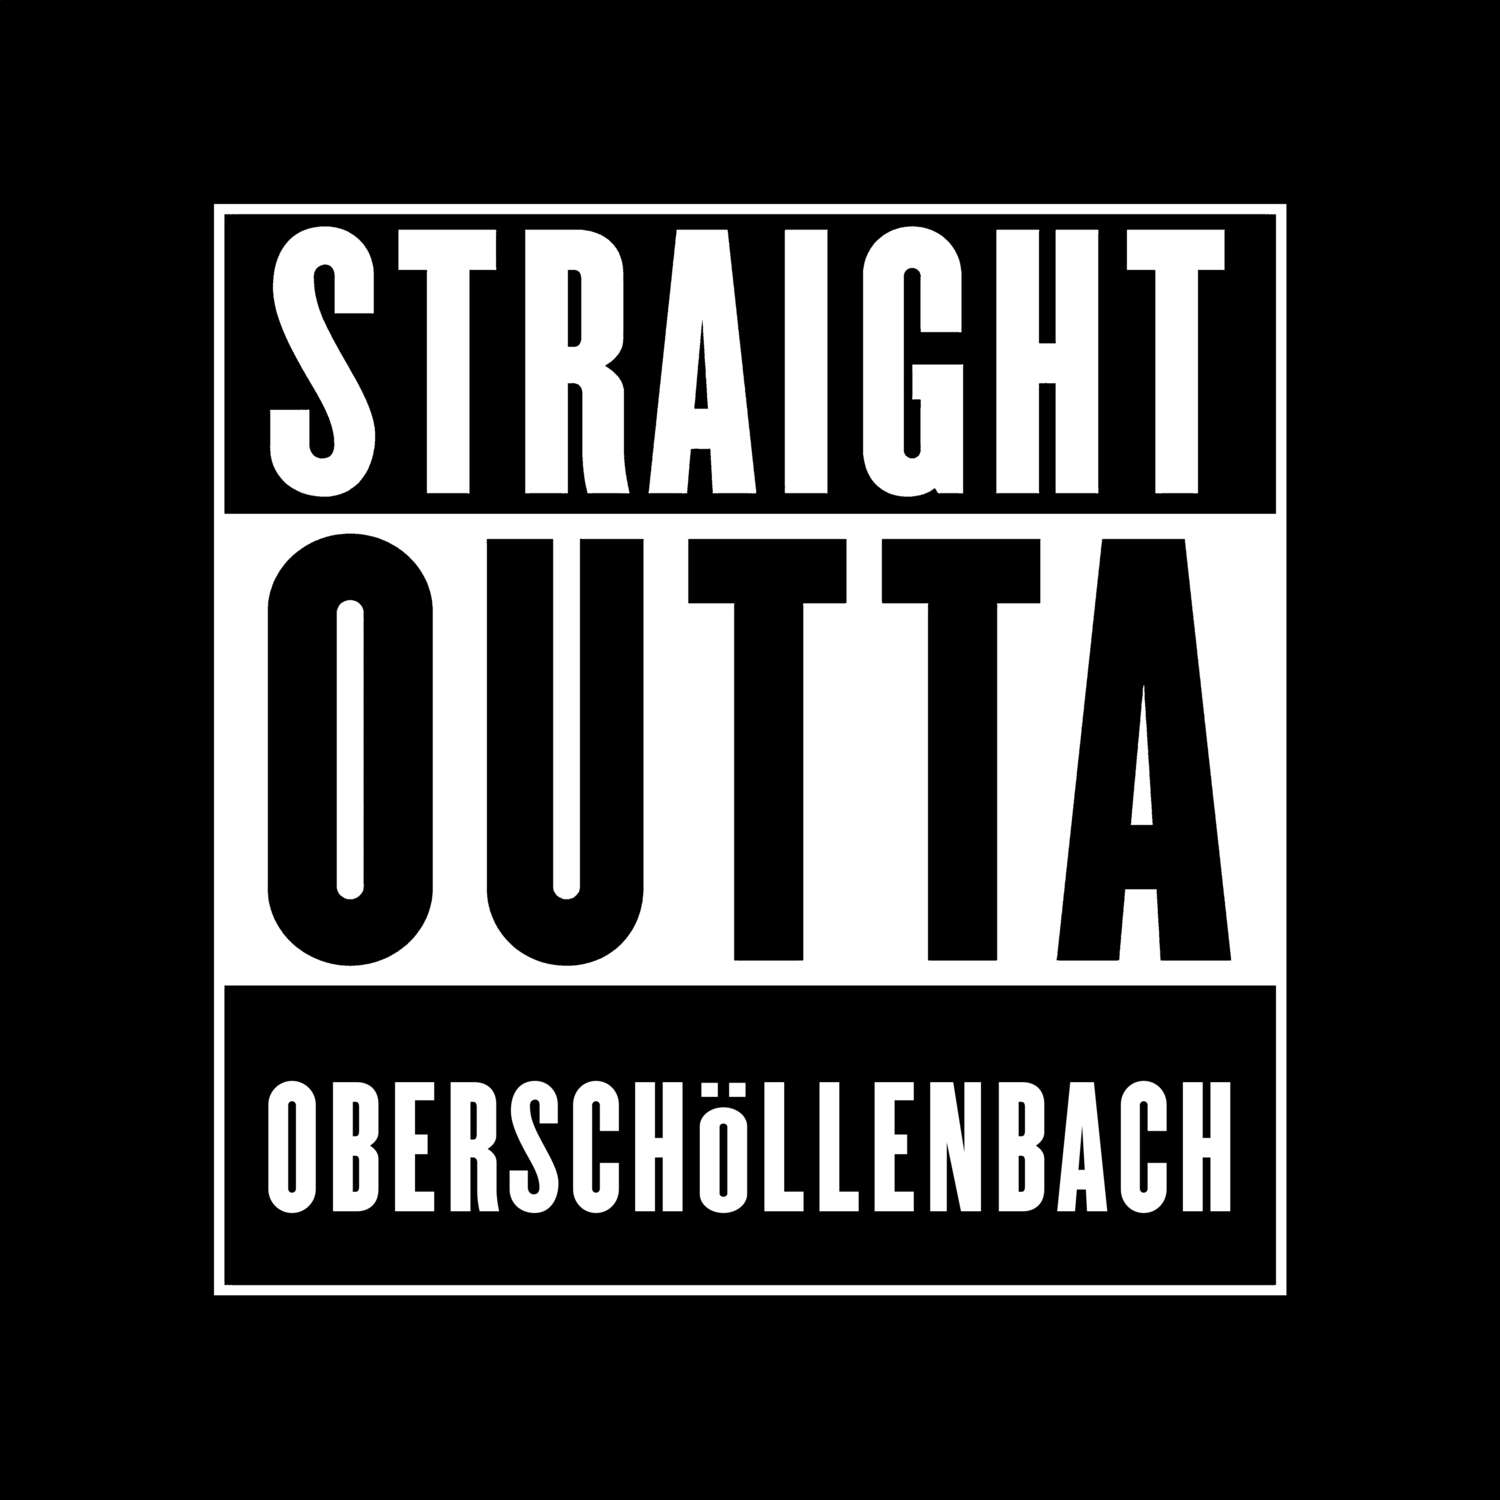 Oberschöllenbach T-Shirt »Straight Outta«